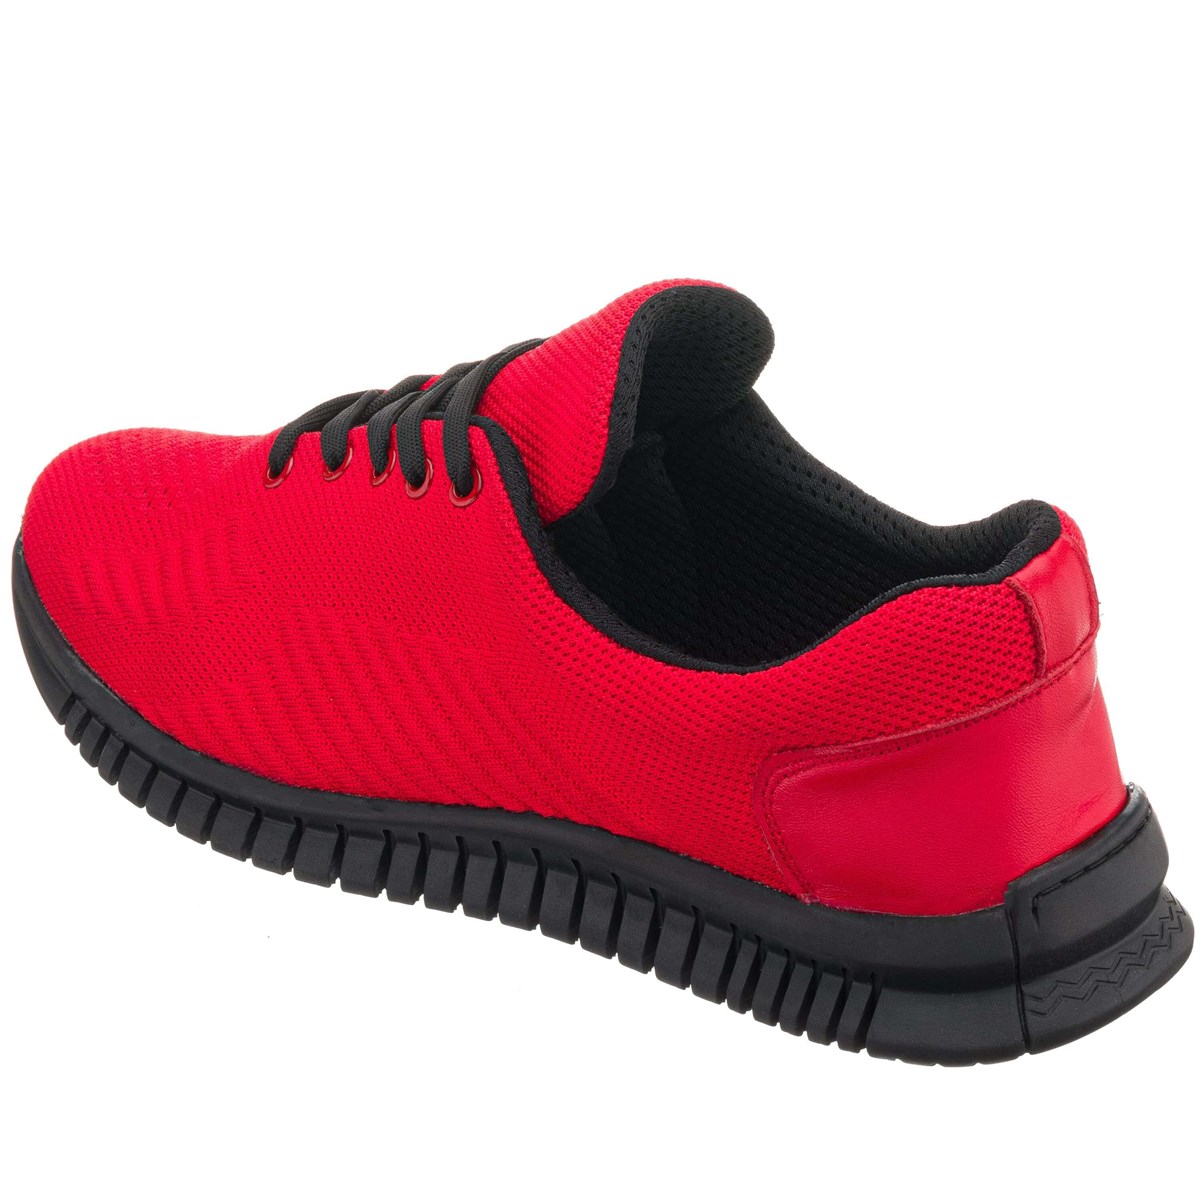 45,46,47,48,49,50 Numaralarda Kırmızı Kauçuk Taban Büyük Numara Erkek Spor  Ayakkabı